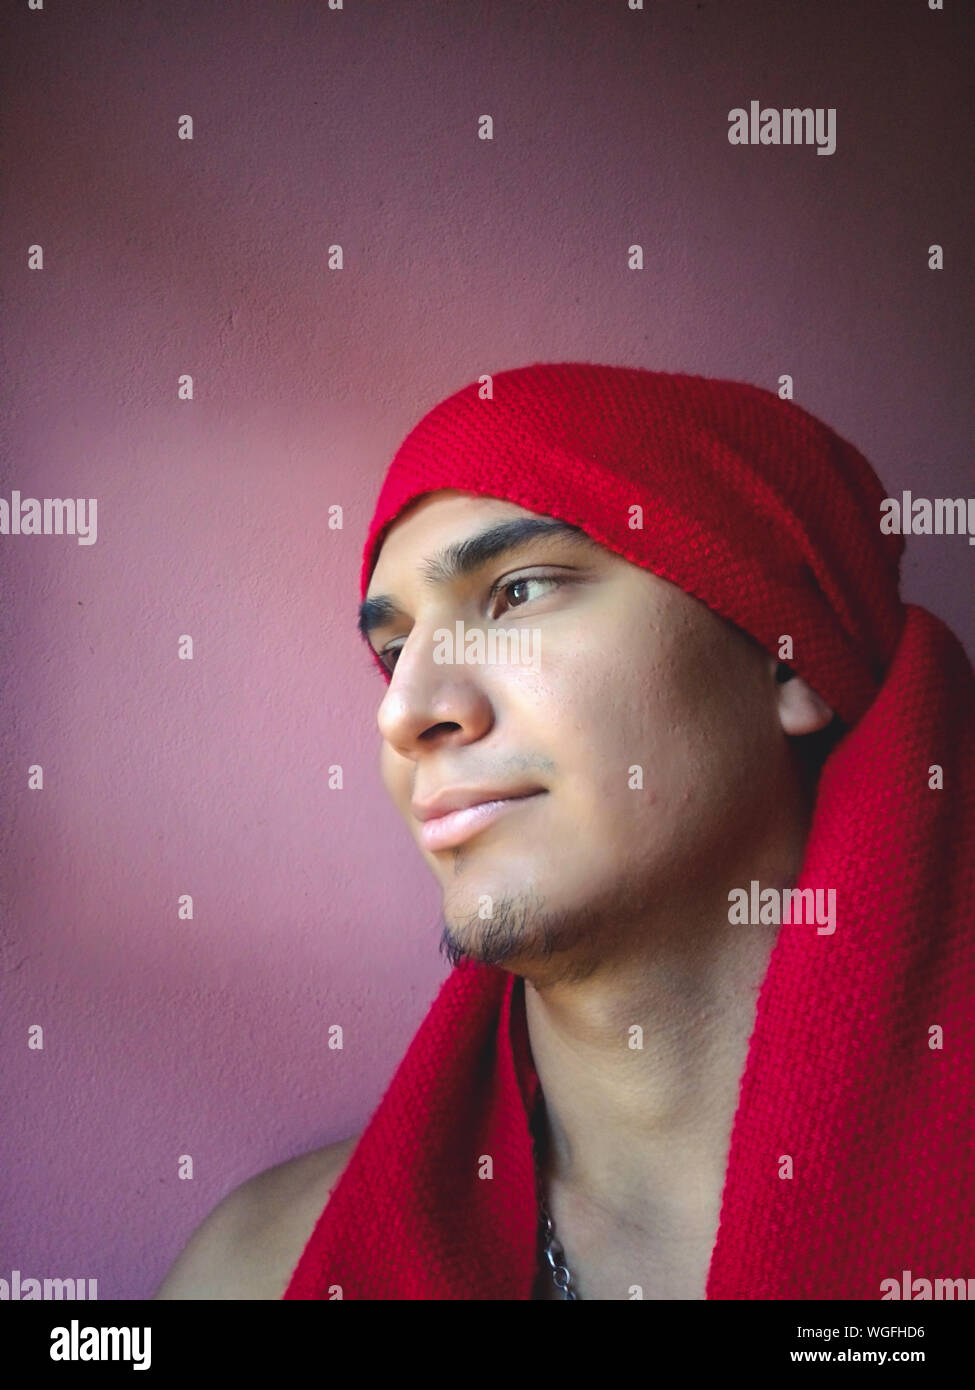 Hombre con pañuelo rojo en la cabeza fotografías imágenes de alta resolución - Alamy